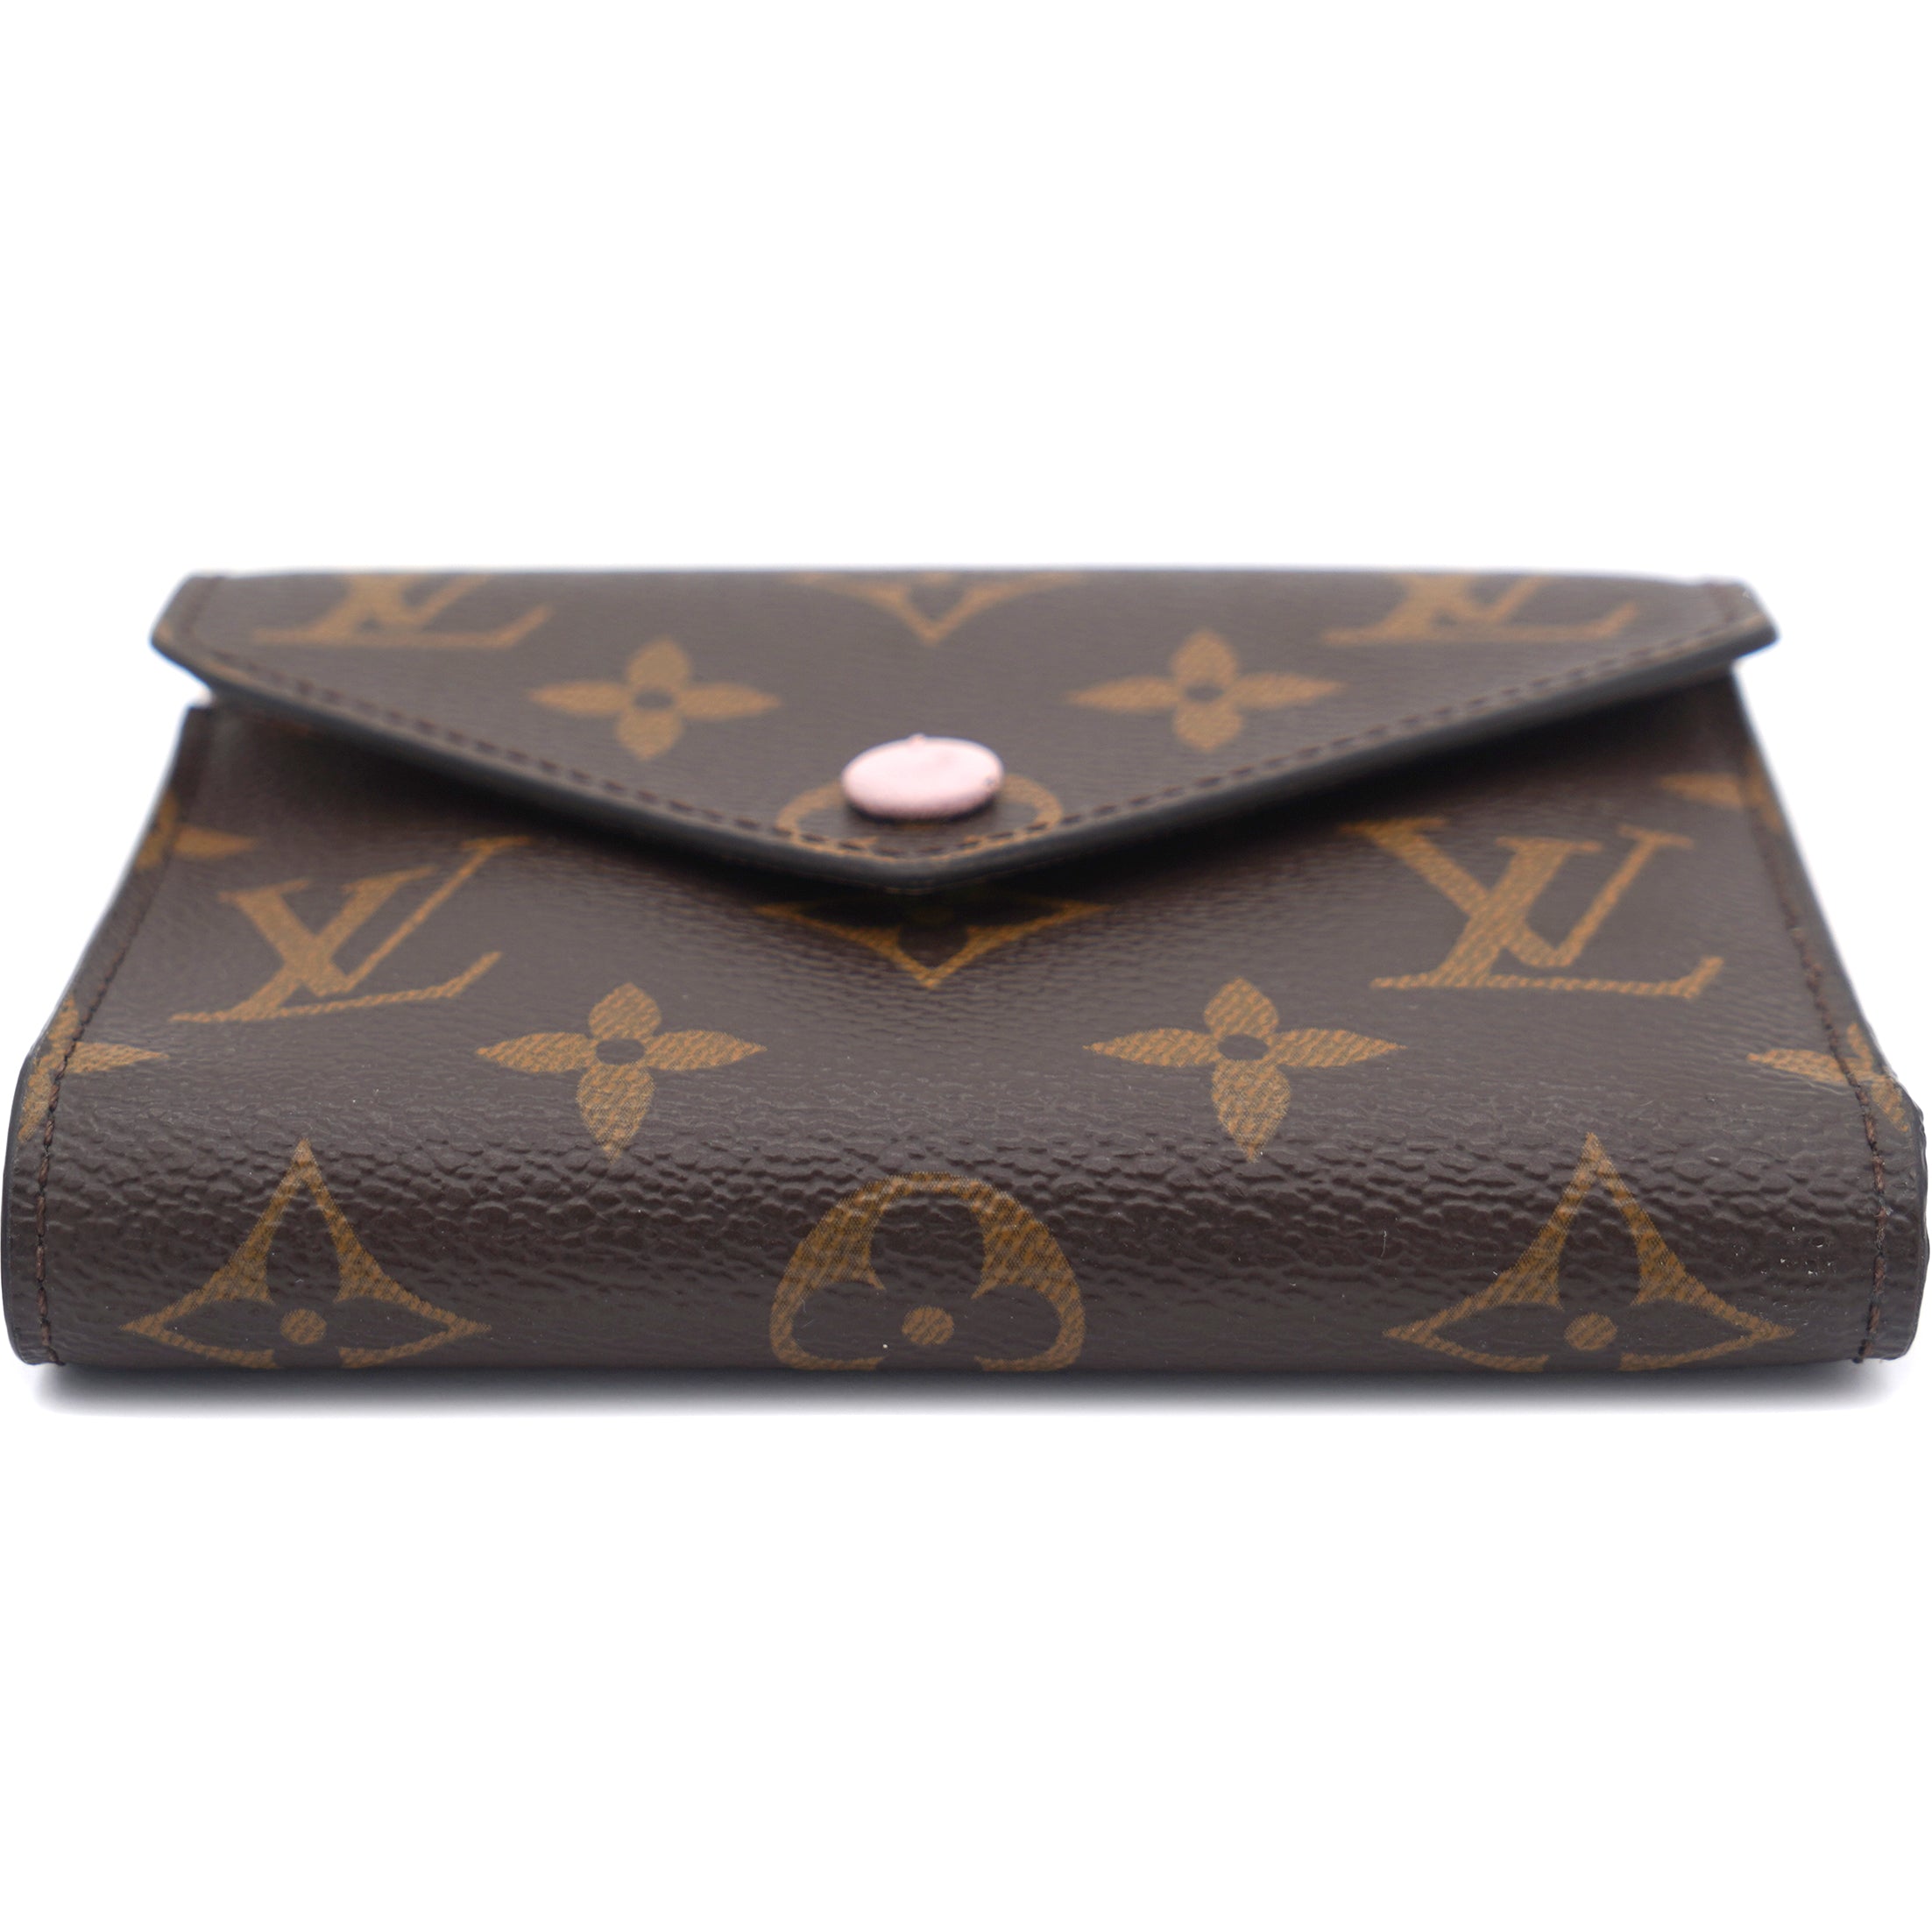 Louis Vuitton Monogram Canvas Victorine Wallet – STYLISHTOP